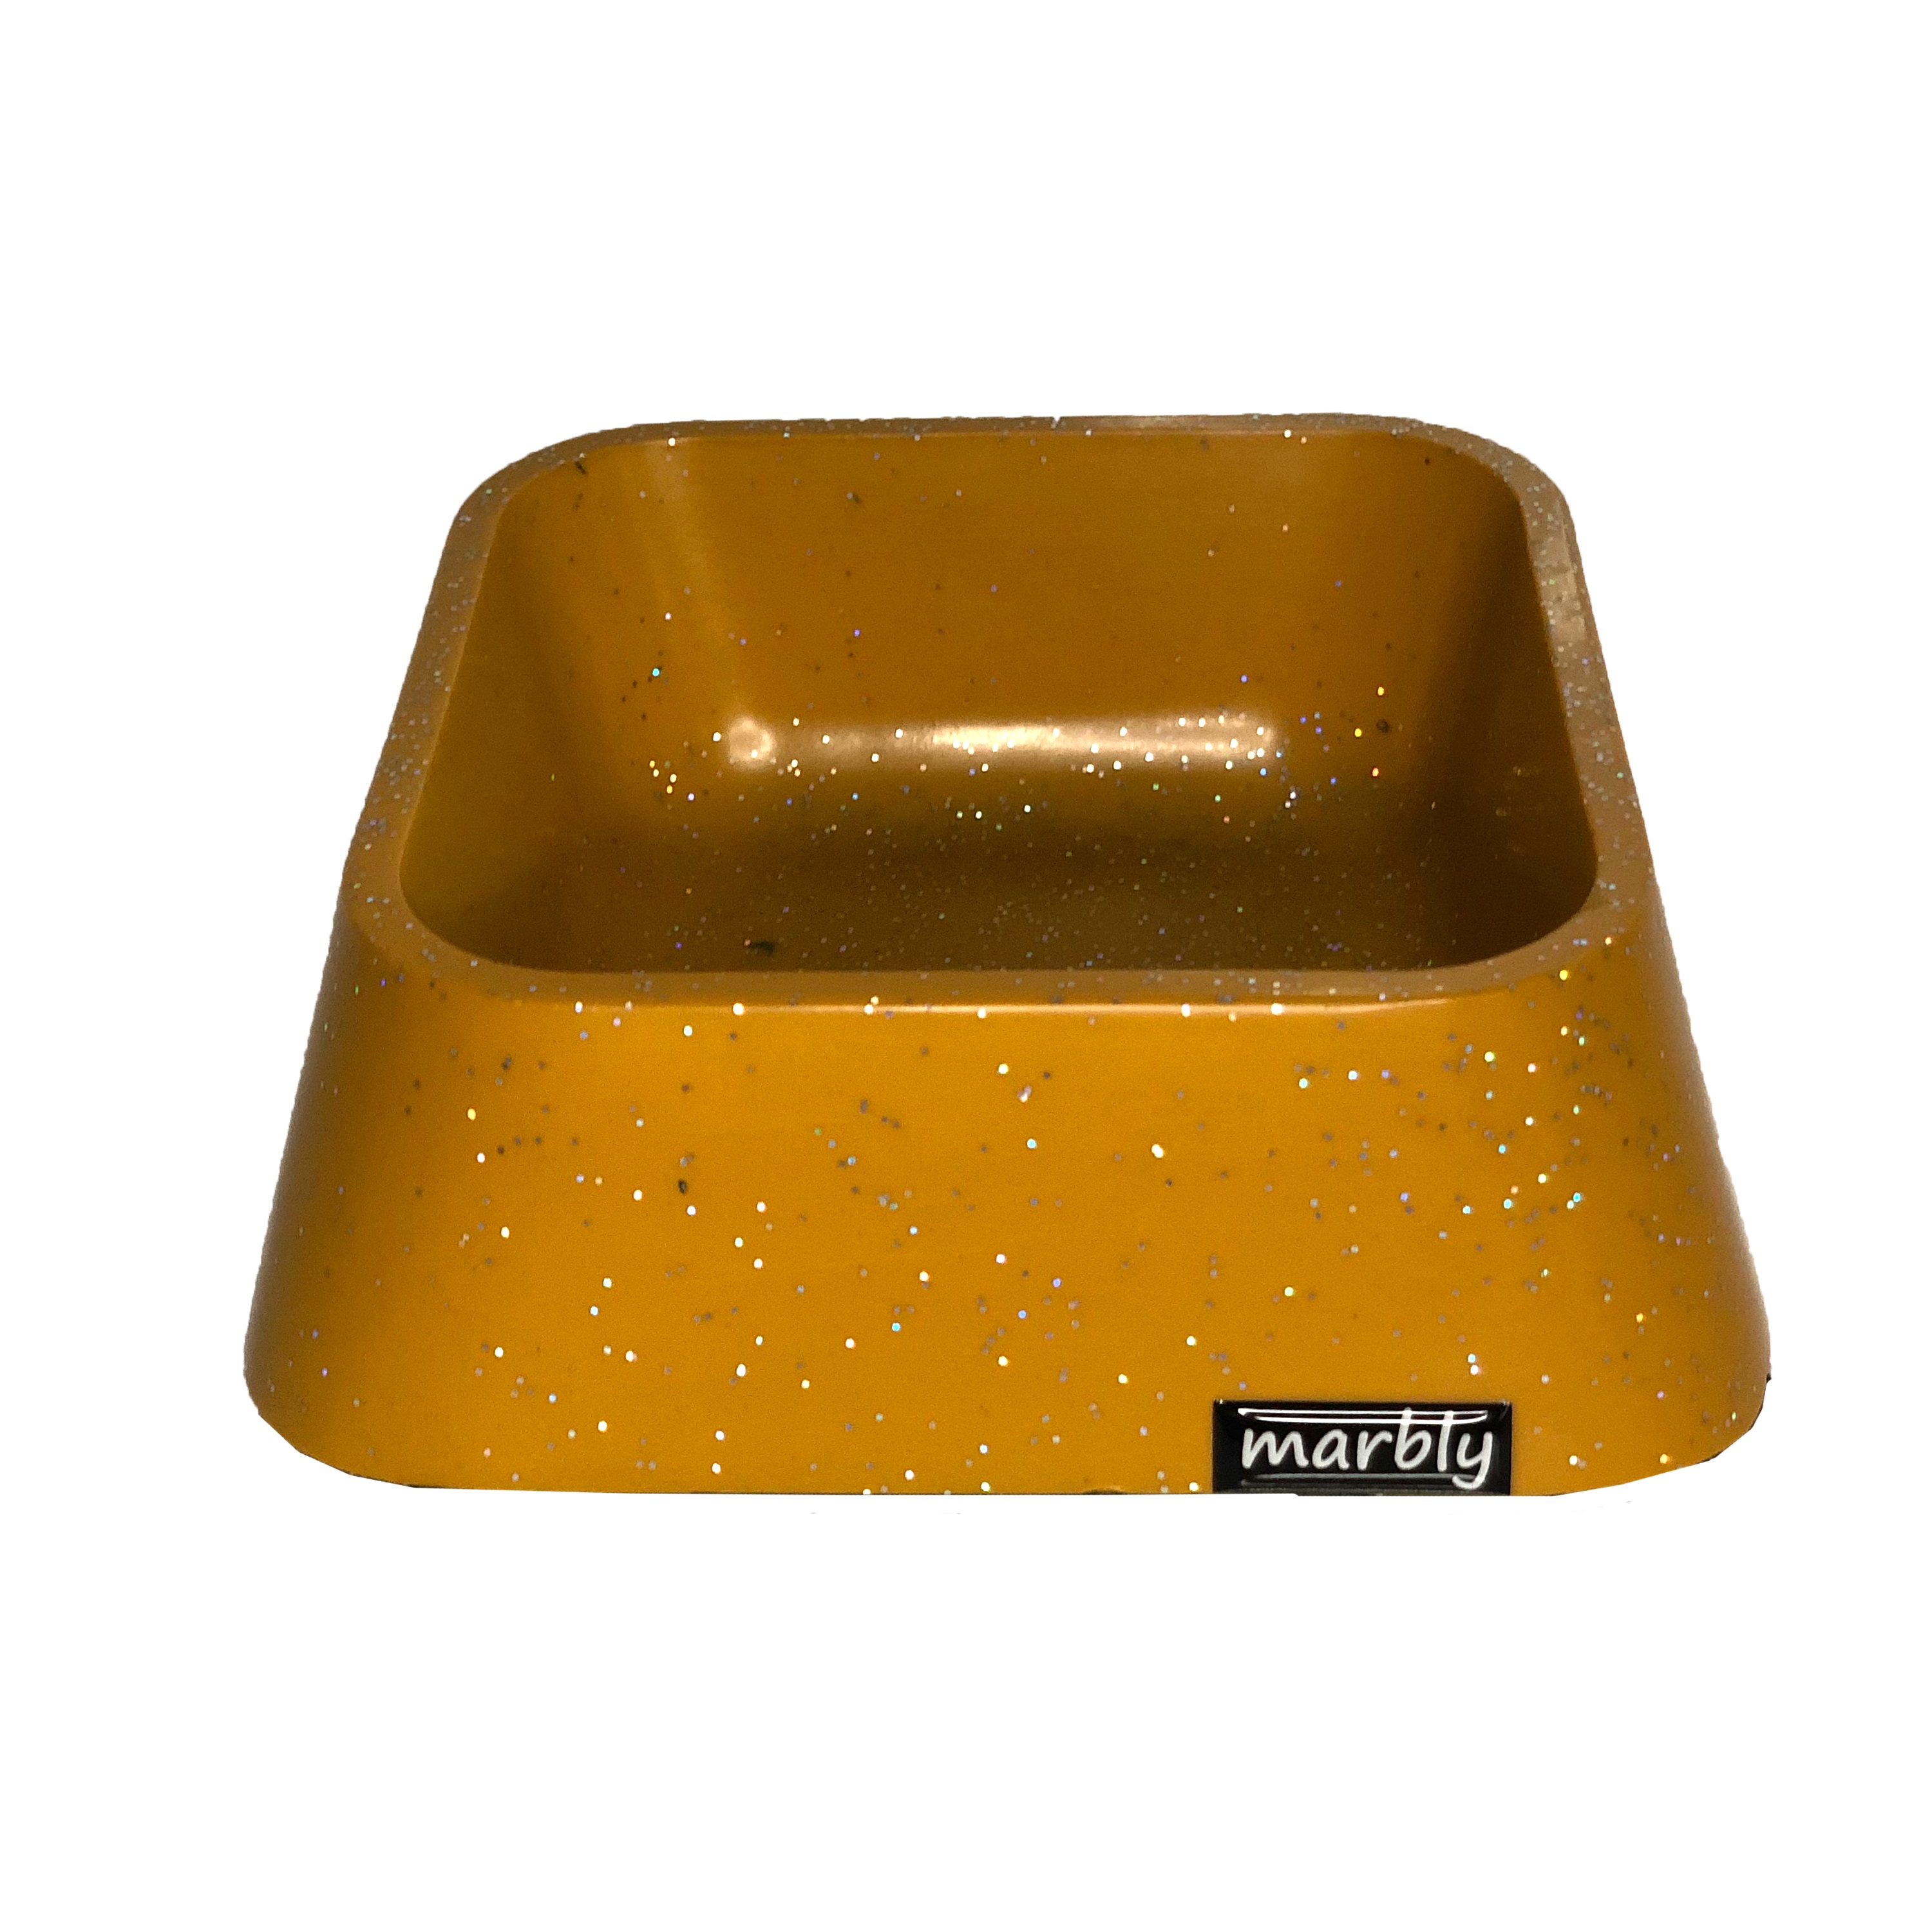 CLZ205 Marbly Sarı Galaxy Mermerit Köpek Mama Su Kabı 500 ml